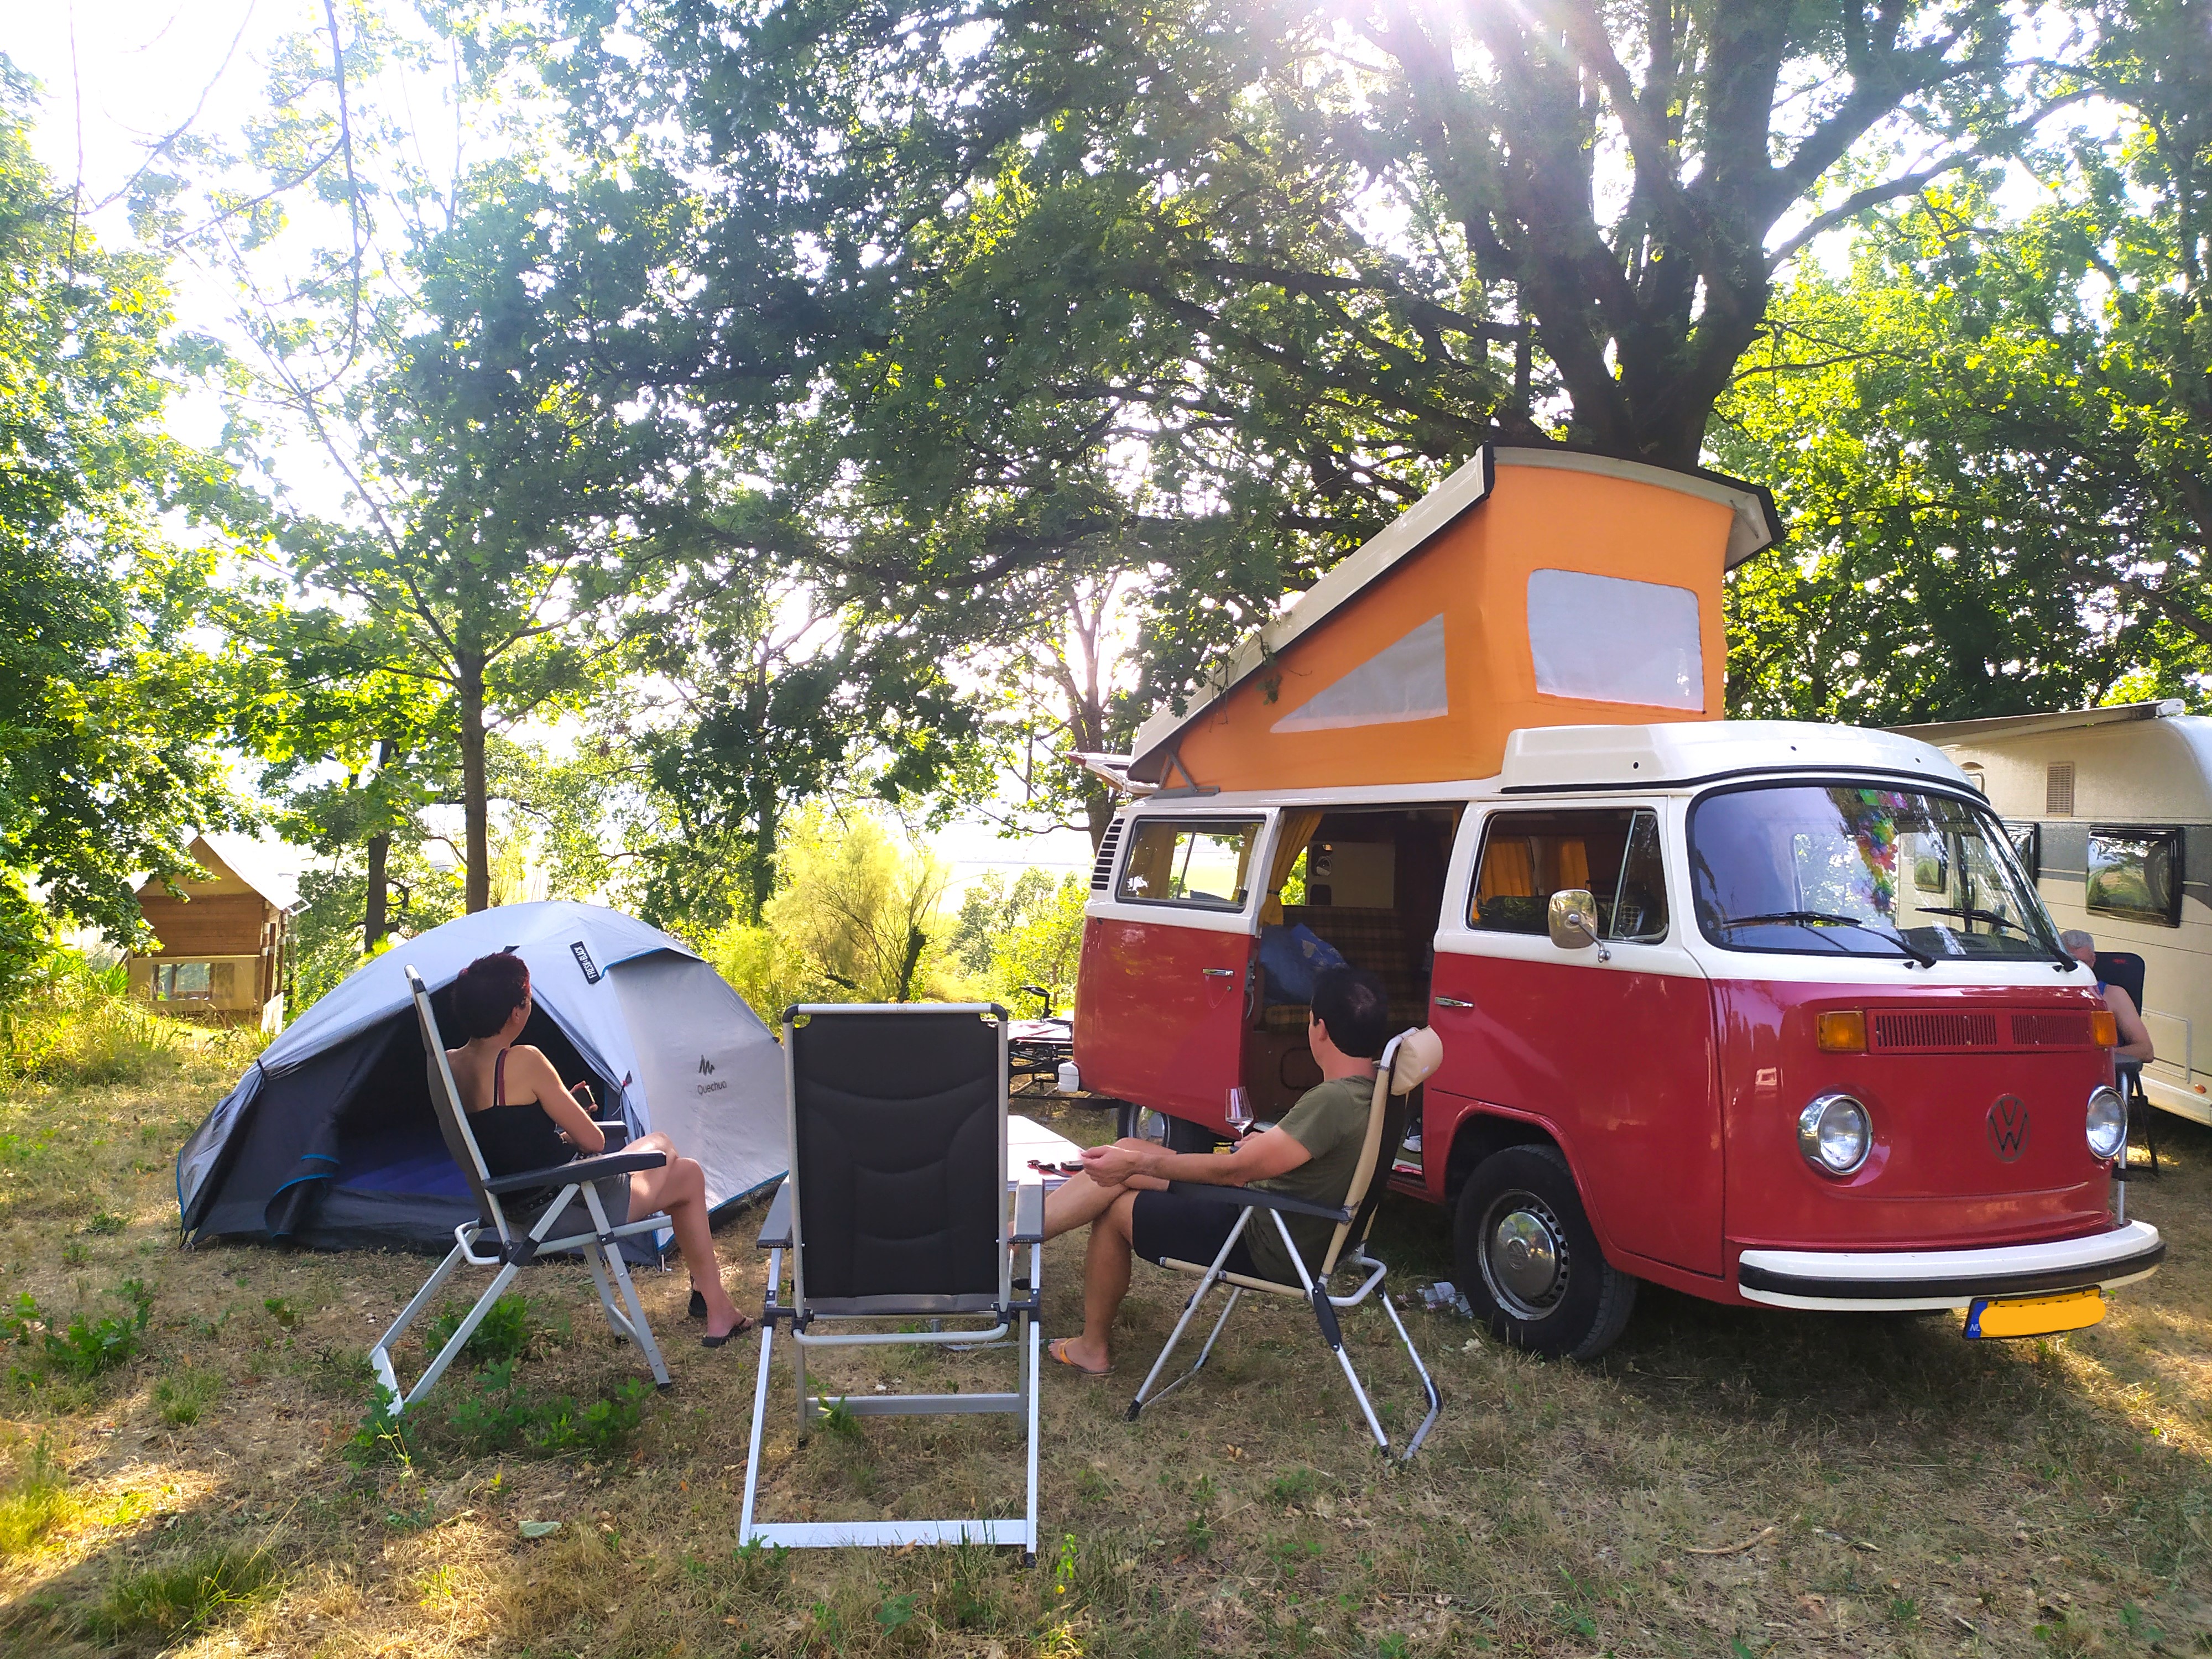 Standplads Confort (1 Campingvogn, Autocamper / 1 Bil / Elektricitet)